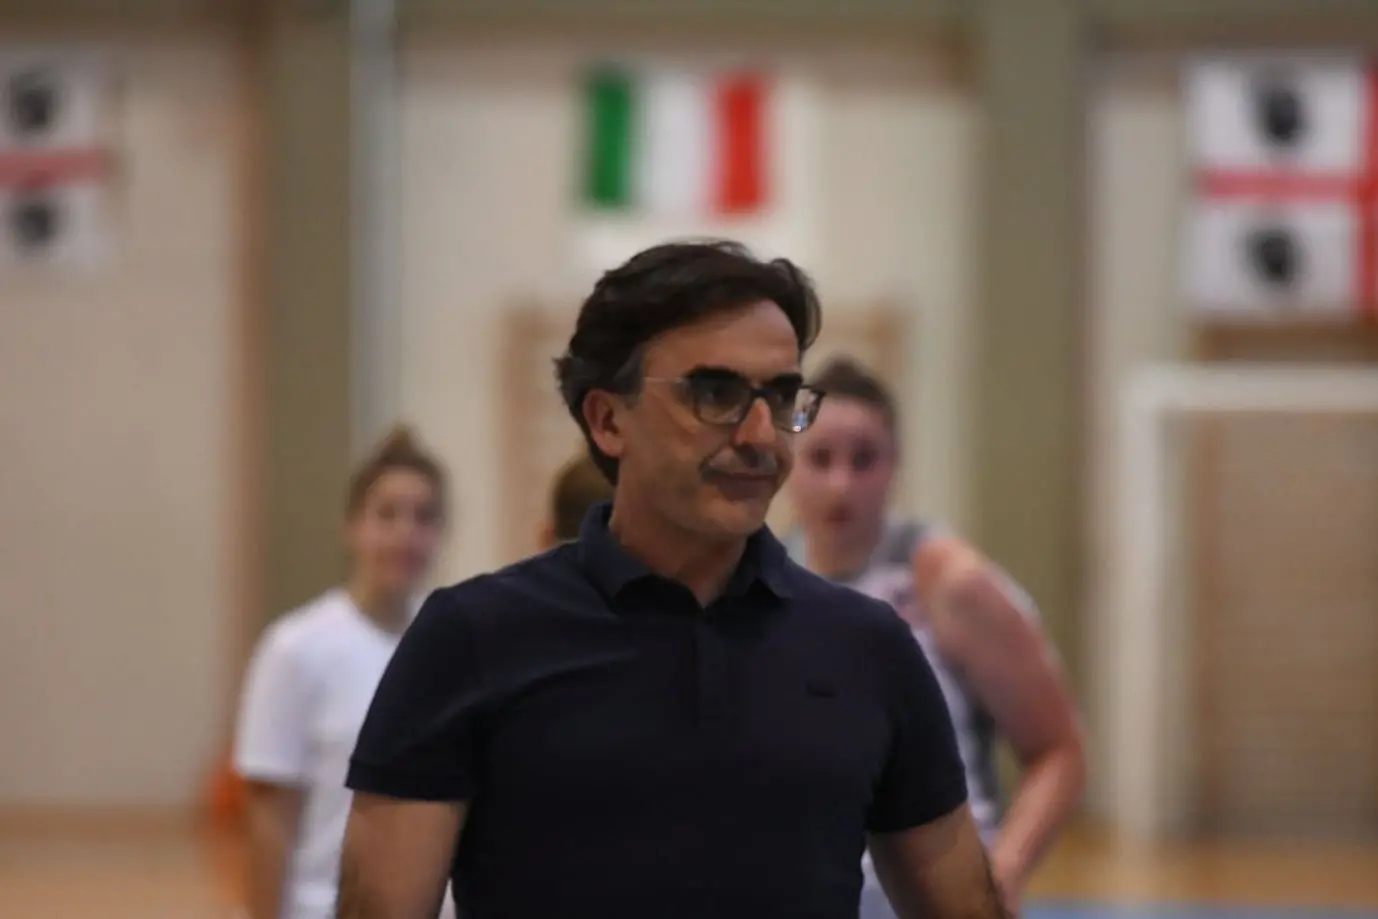 Federico Xaxa, coach del Cus Cagliari in Serie B Femminile (foto di Andrea Chiaramida)